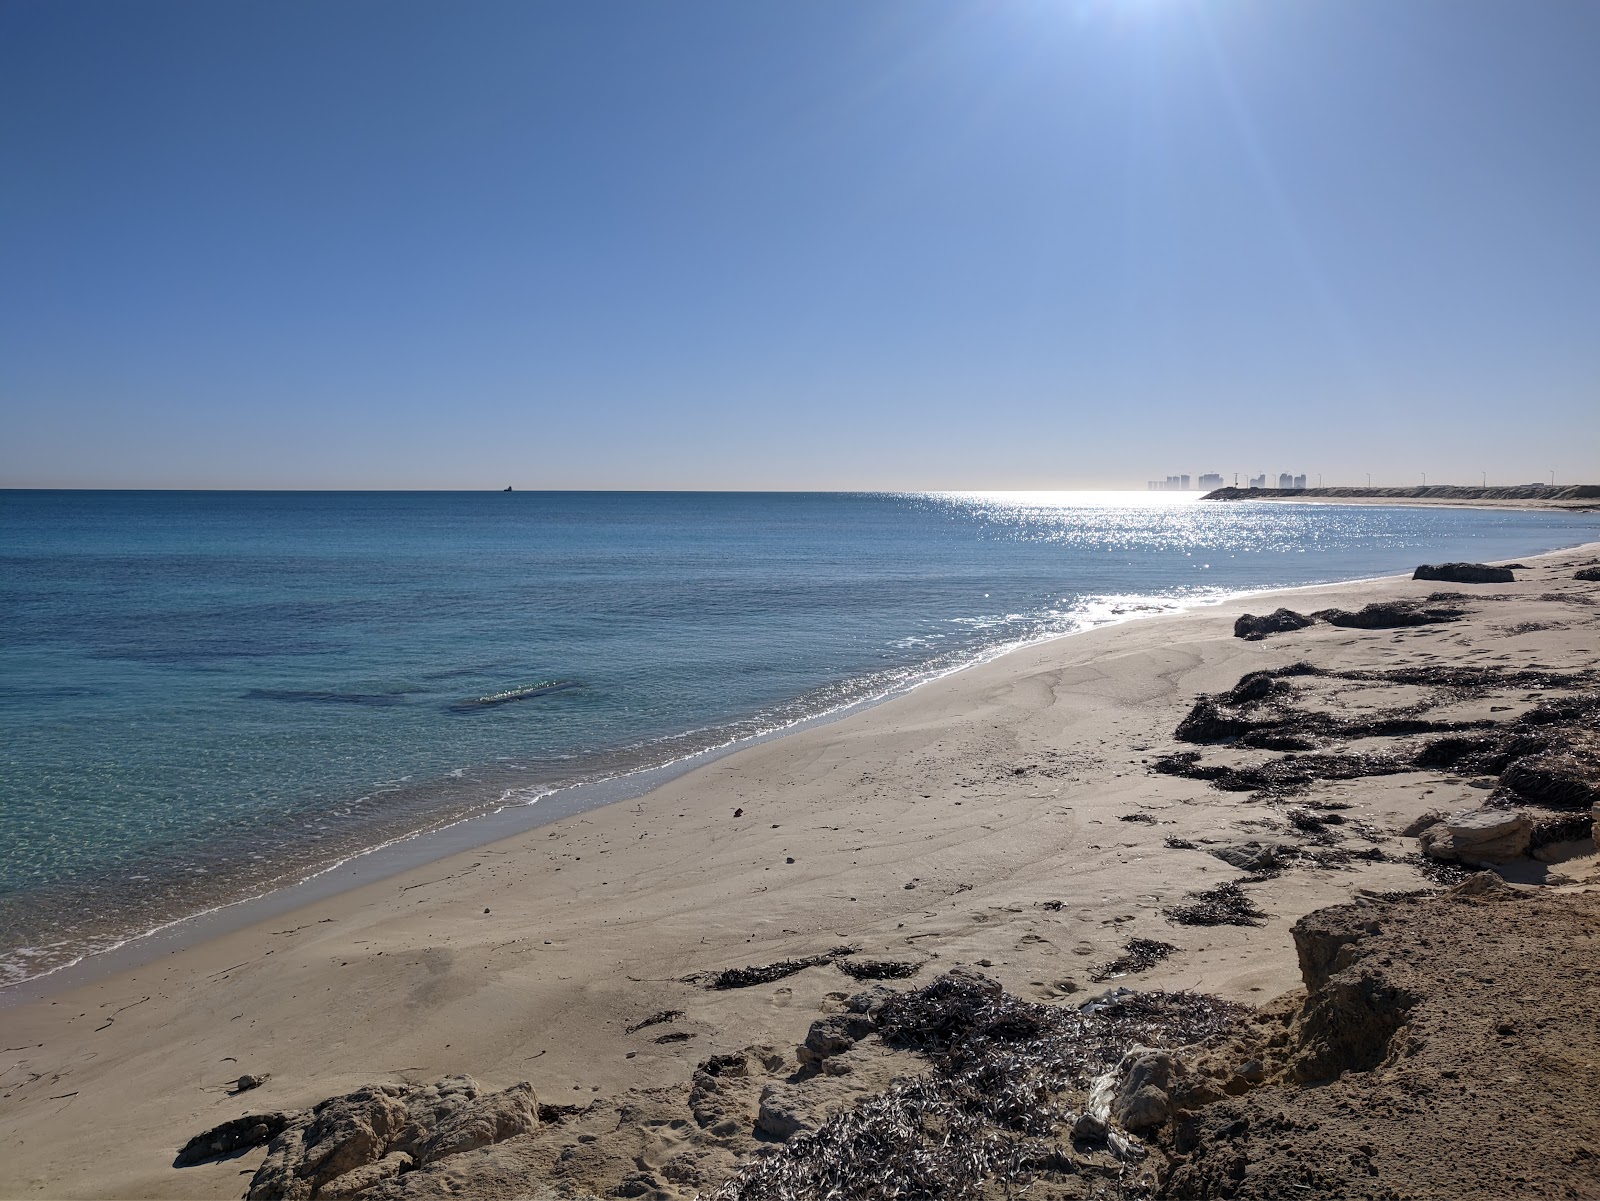 Al-Hamra Beach'in fotoğrafı geniş plaj ile birlikte